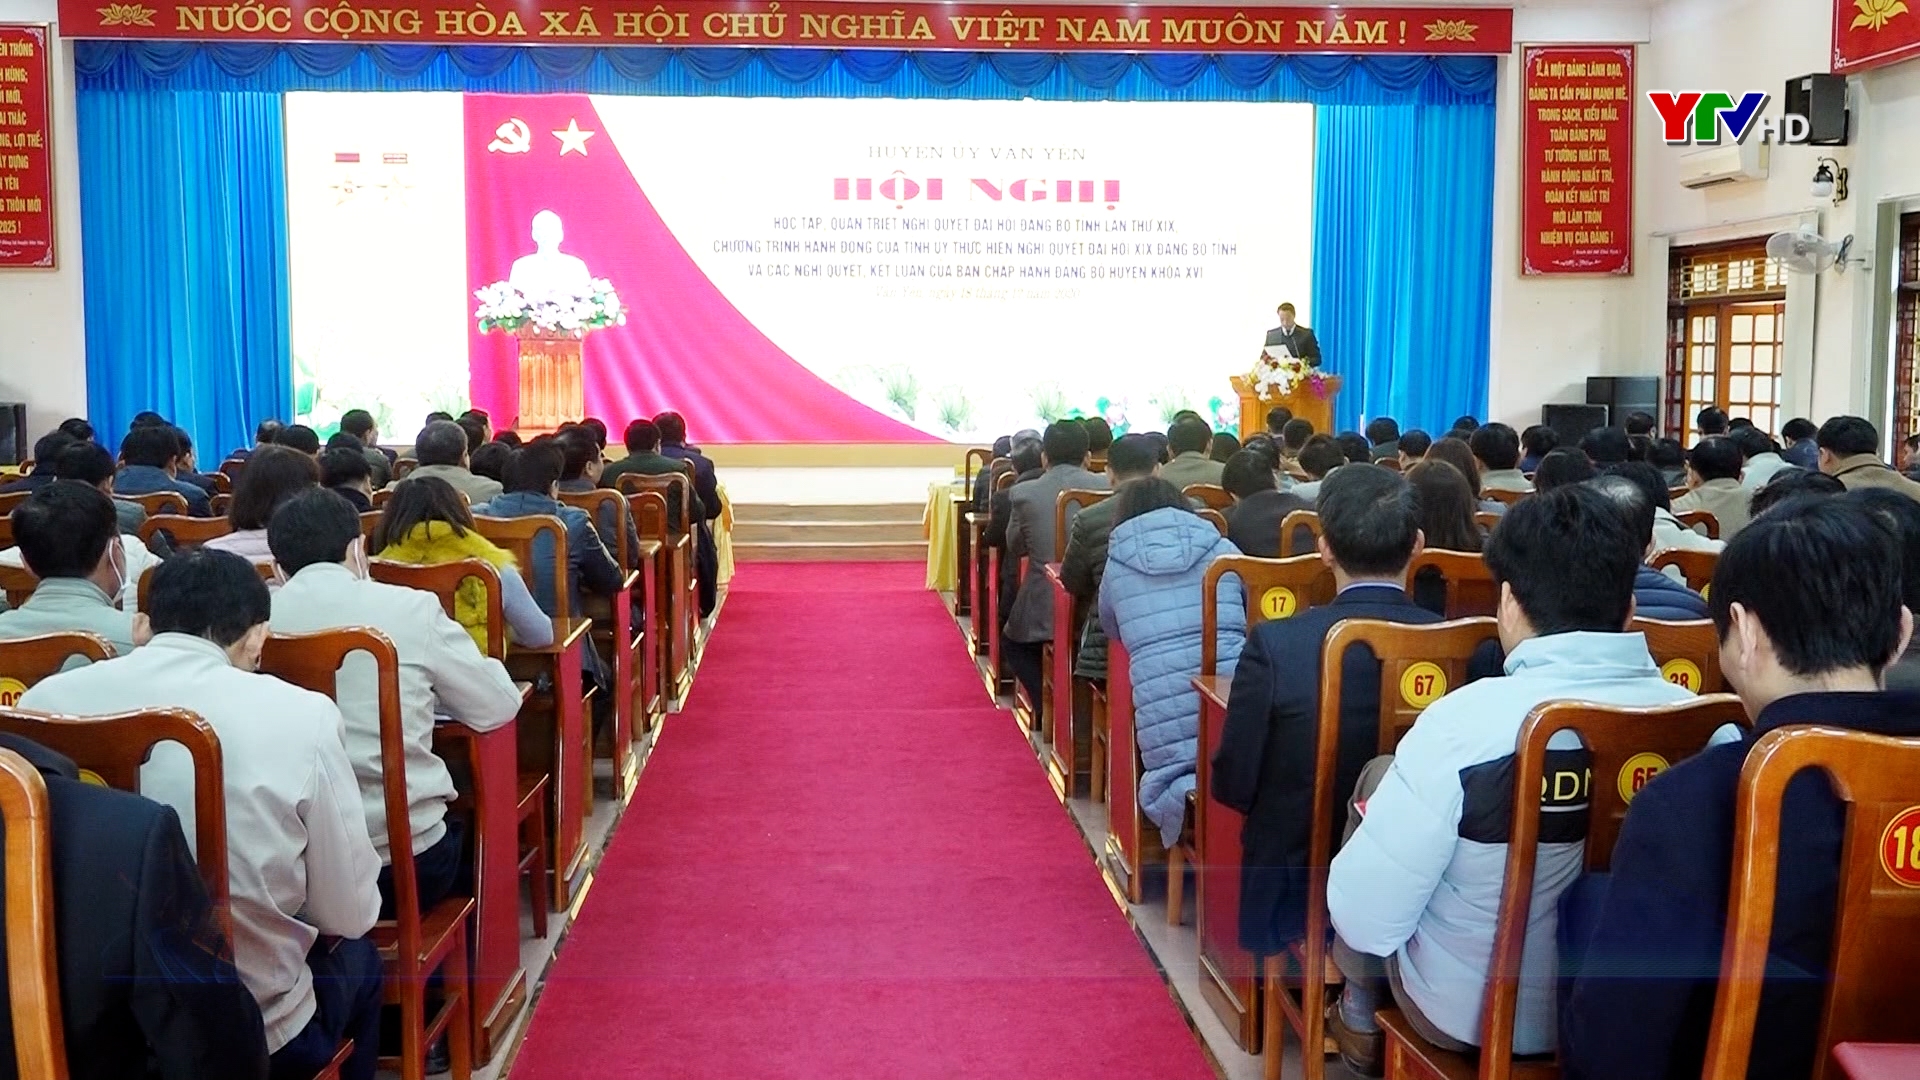 Đảng bộ huyện Văn Yên cụ thể hóa việc học tập và làm theo lời Bác